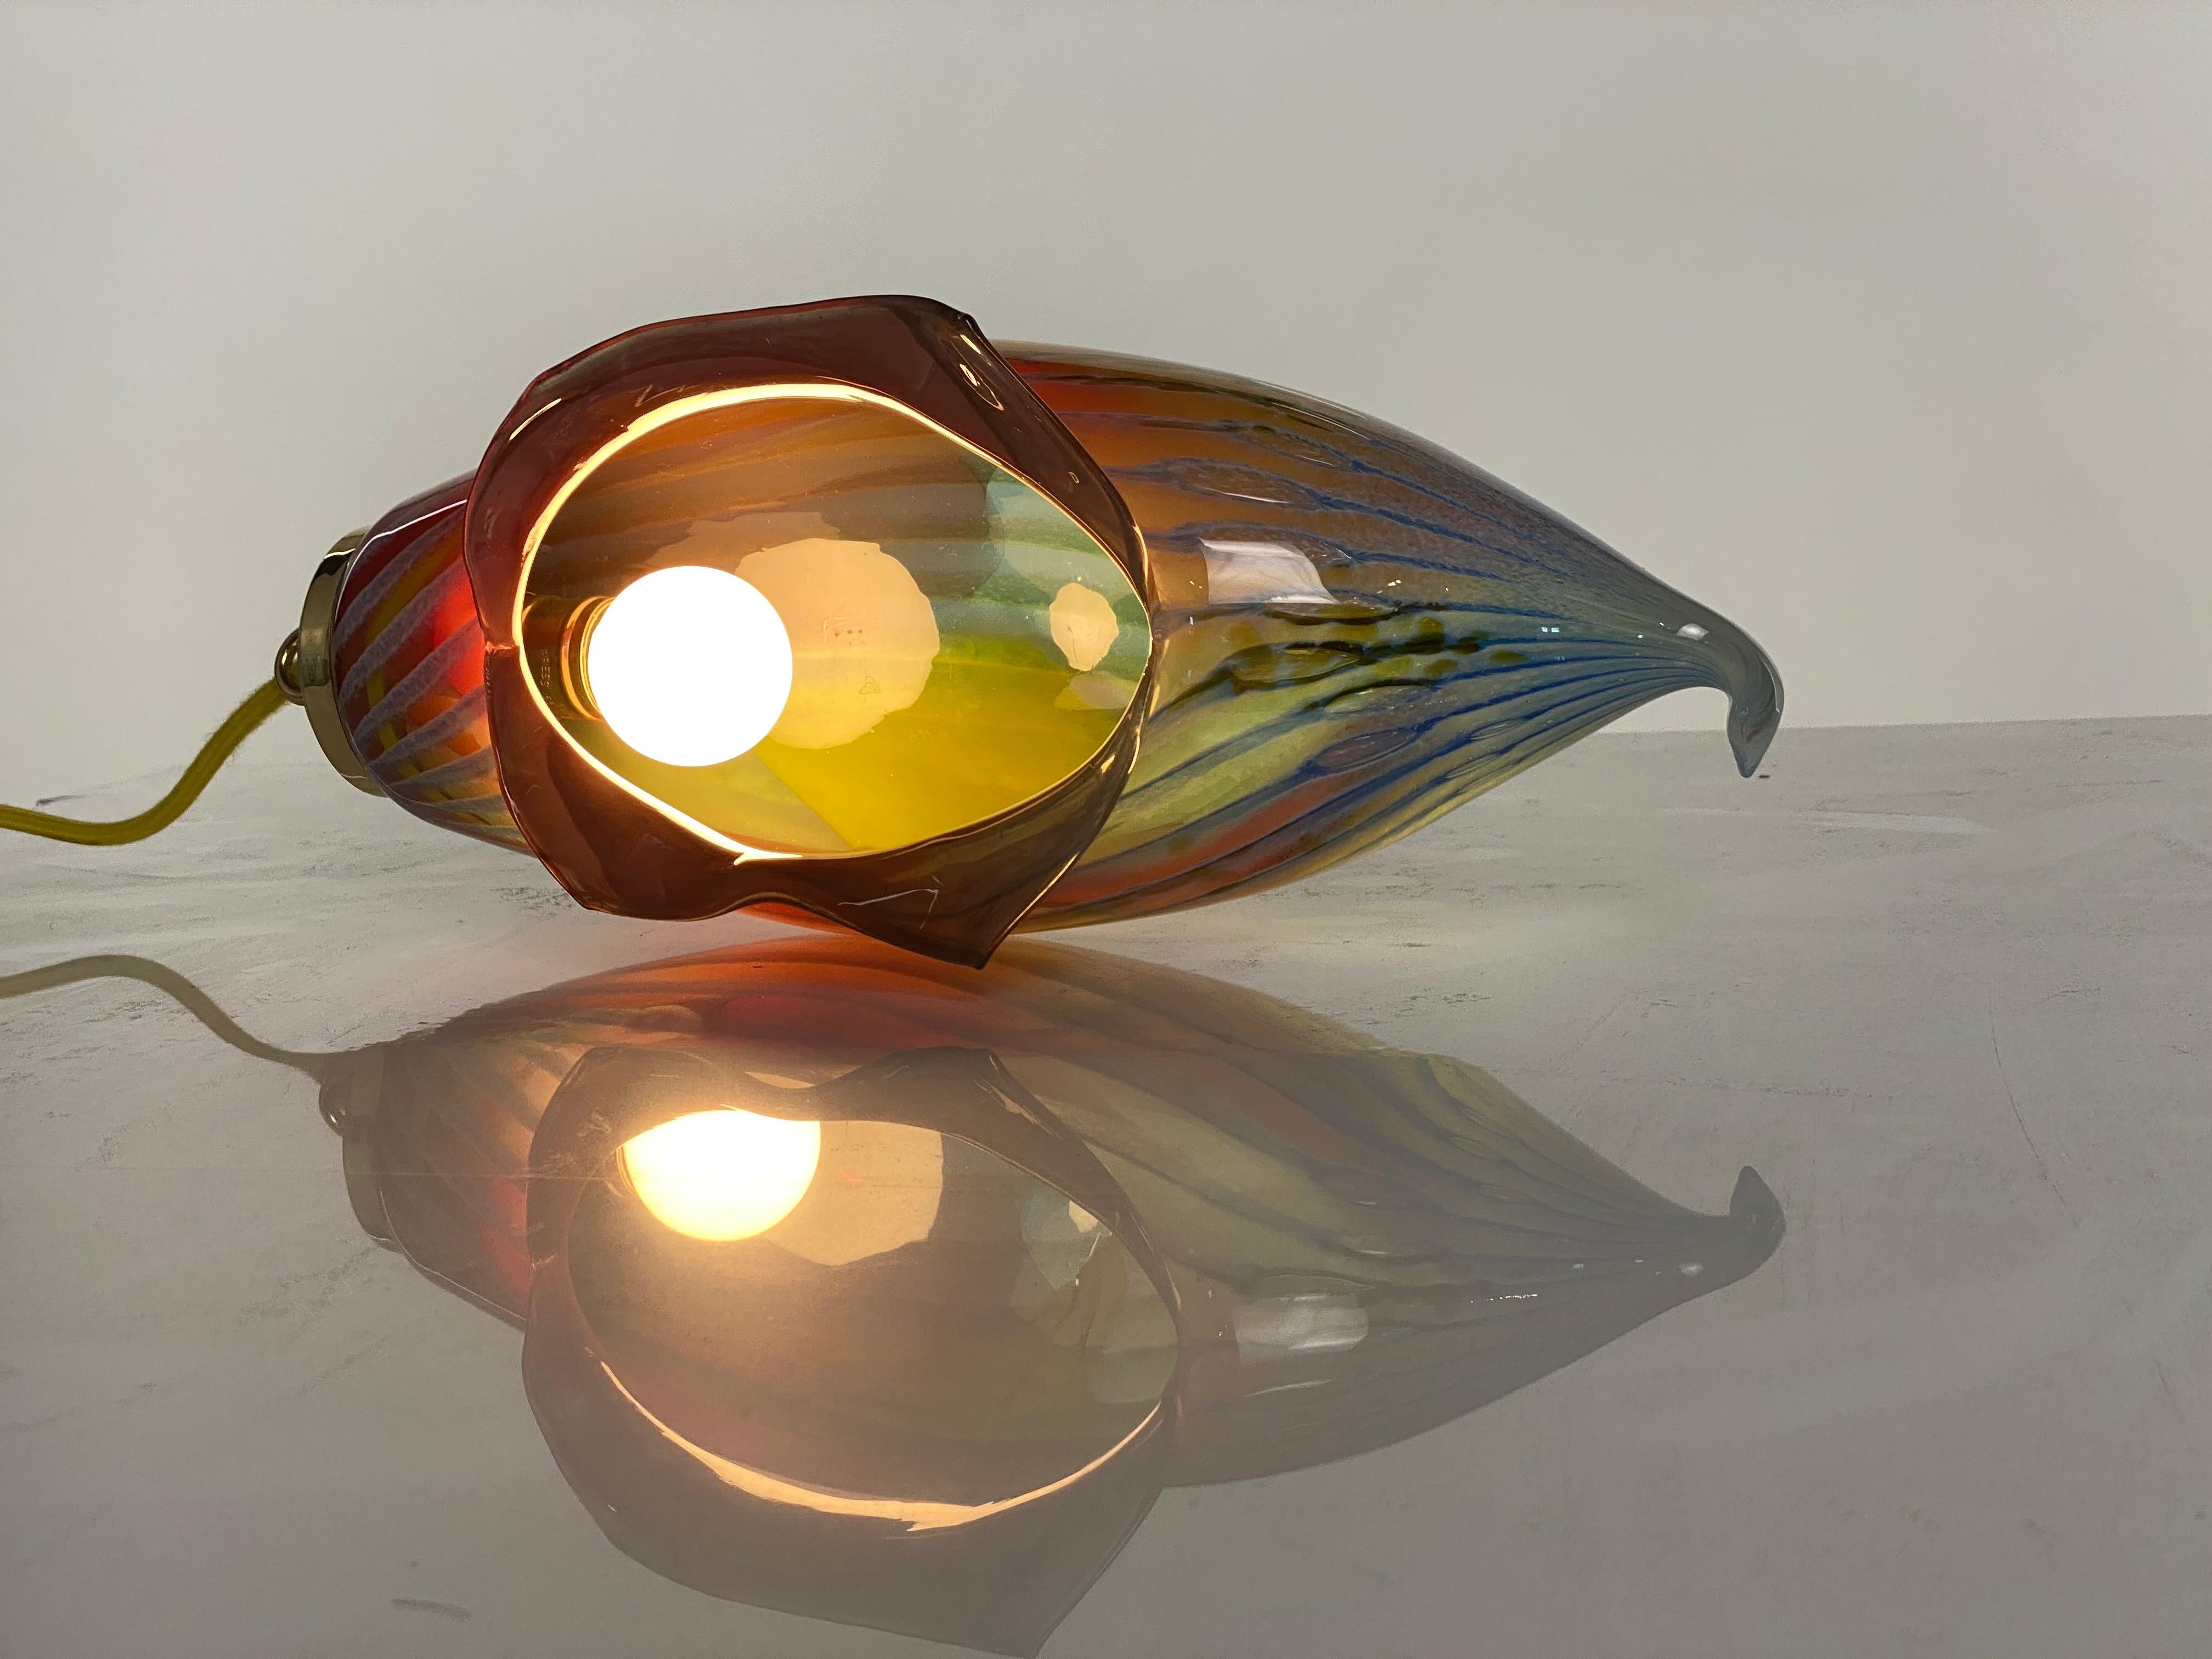 Il s'agit d'une nouvelle œuvre de Mattia Biagi dans un verre.
Cette lampe sculpturale peut être utilisée comme lampe de table ou suspendue.